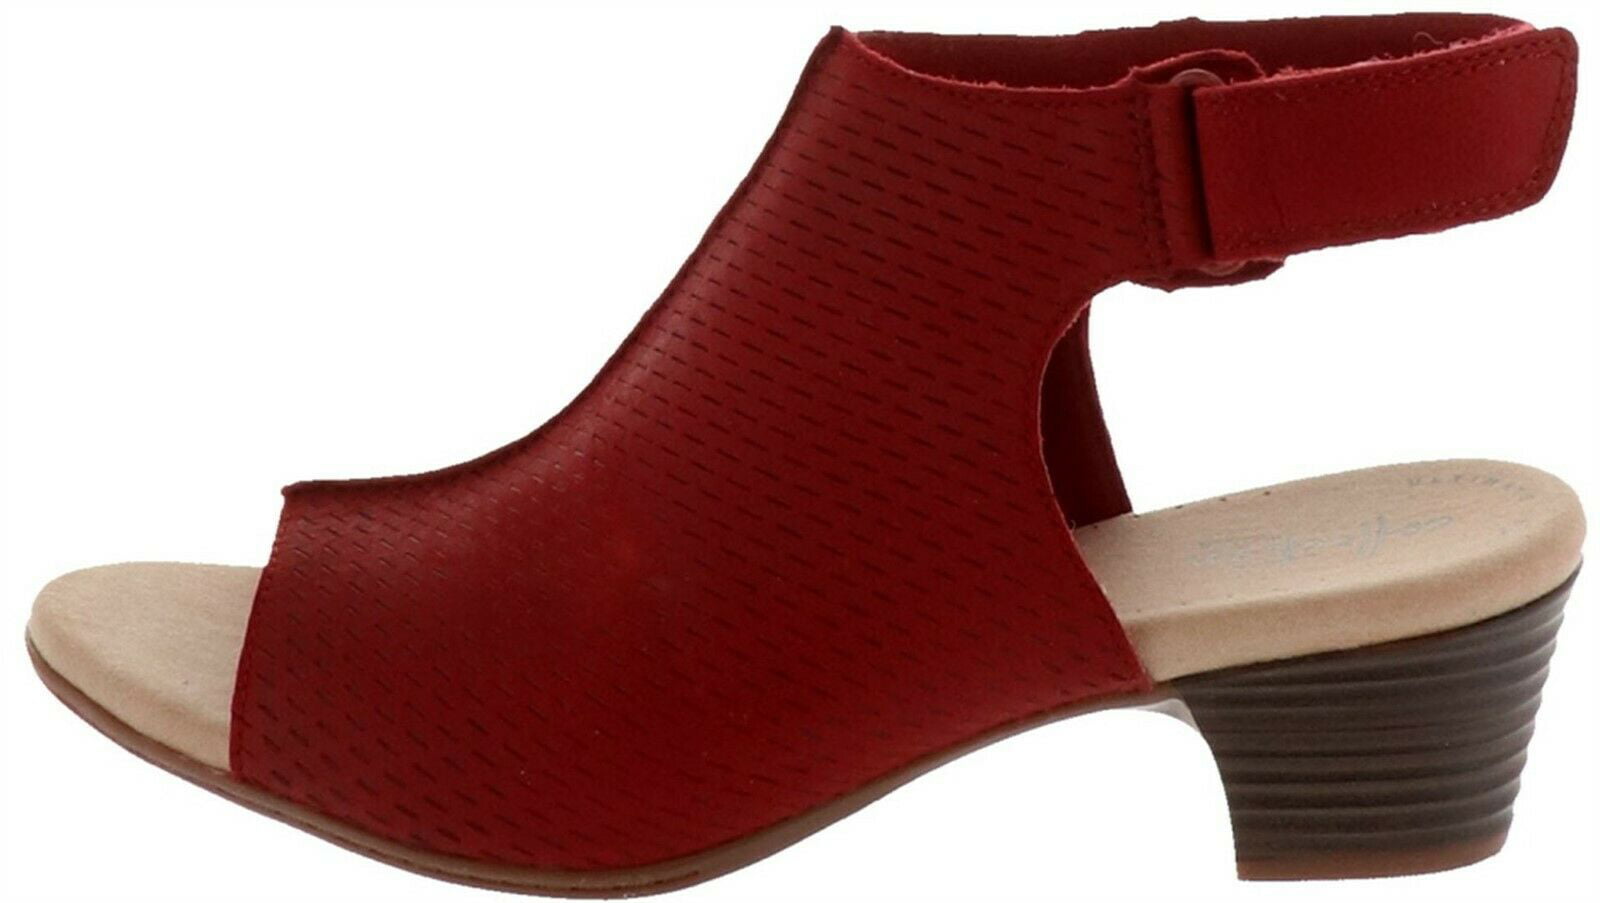 Buy > clarks high heel sandals > in stock